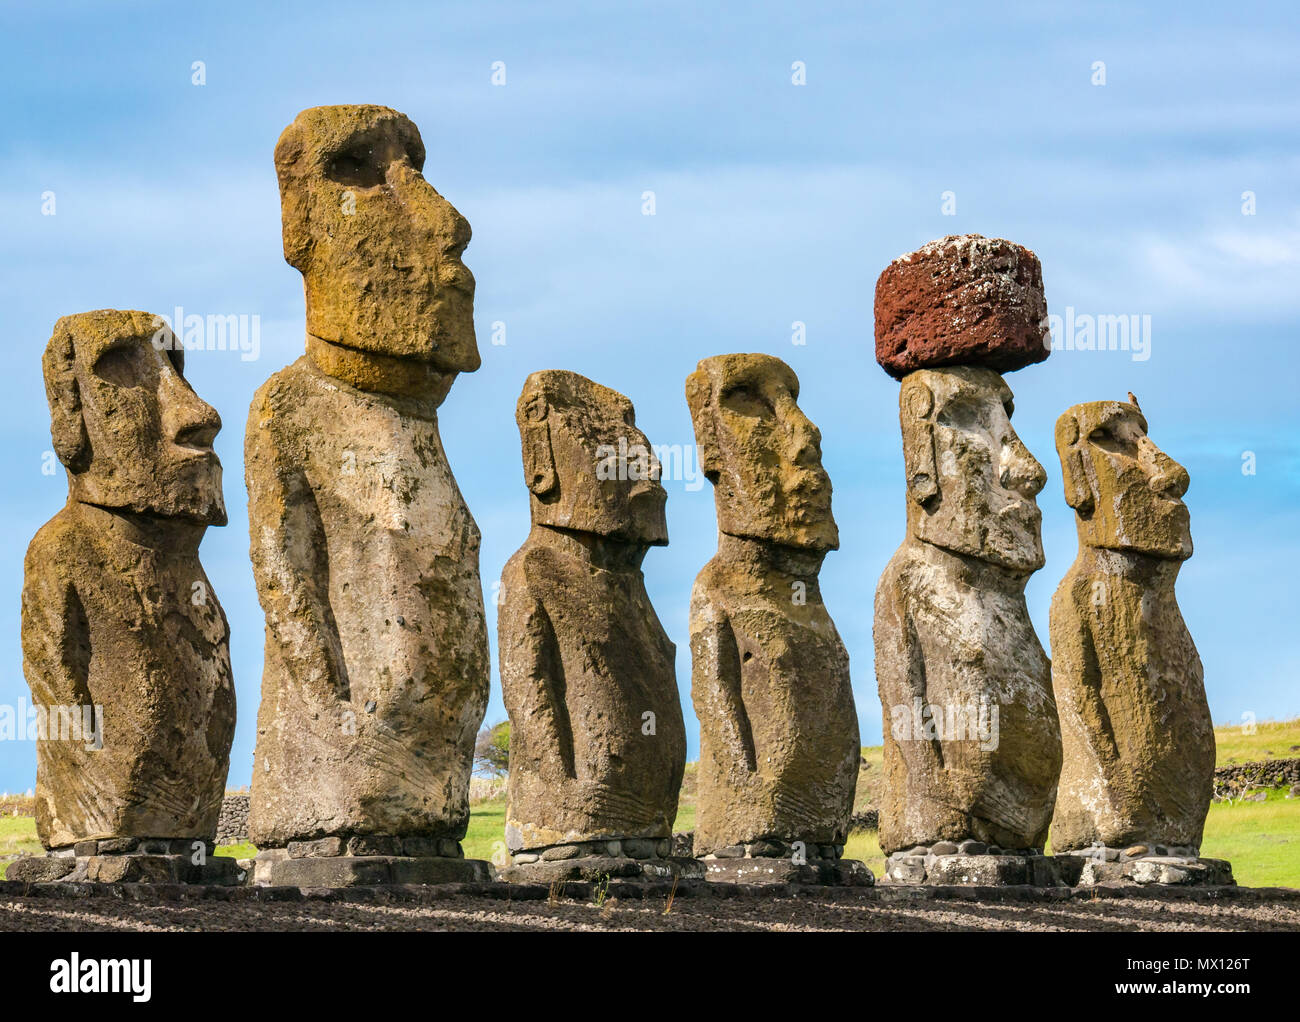 Tongariki Moai, ricostruita più grande Ahu sito archeologico, con rosso scouria topknot, Isola di Pasqua, Rapa Nui, Cile Foto Stock